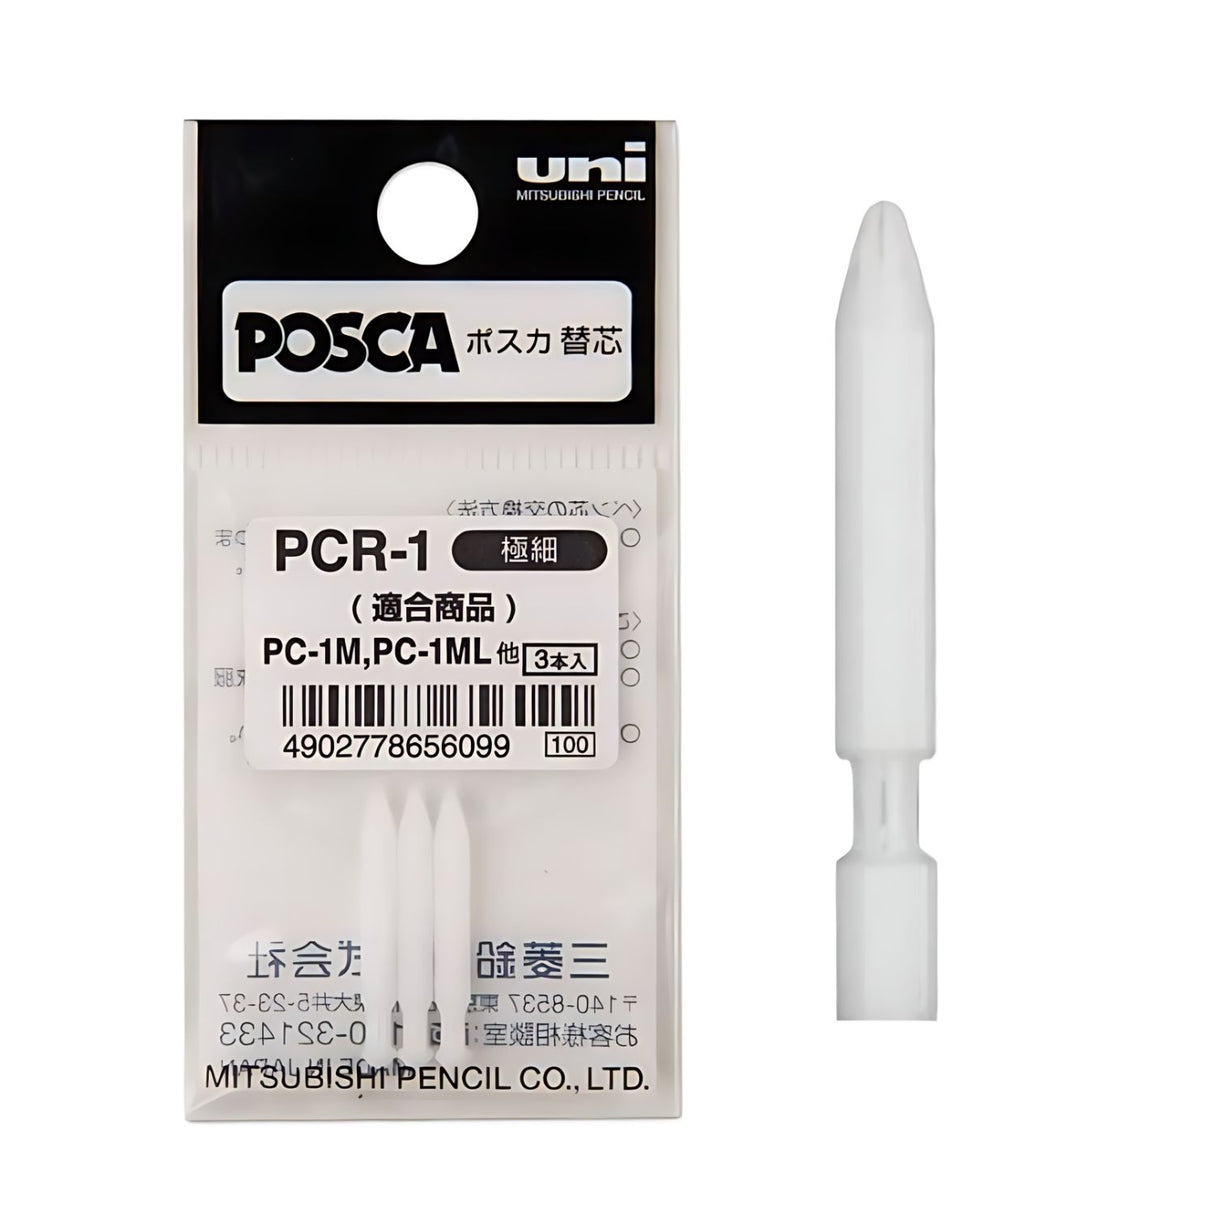 Uni Posca PC-1M - Pack 3 Puntas Repuesto PCR-1